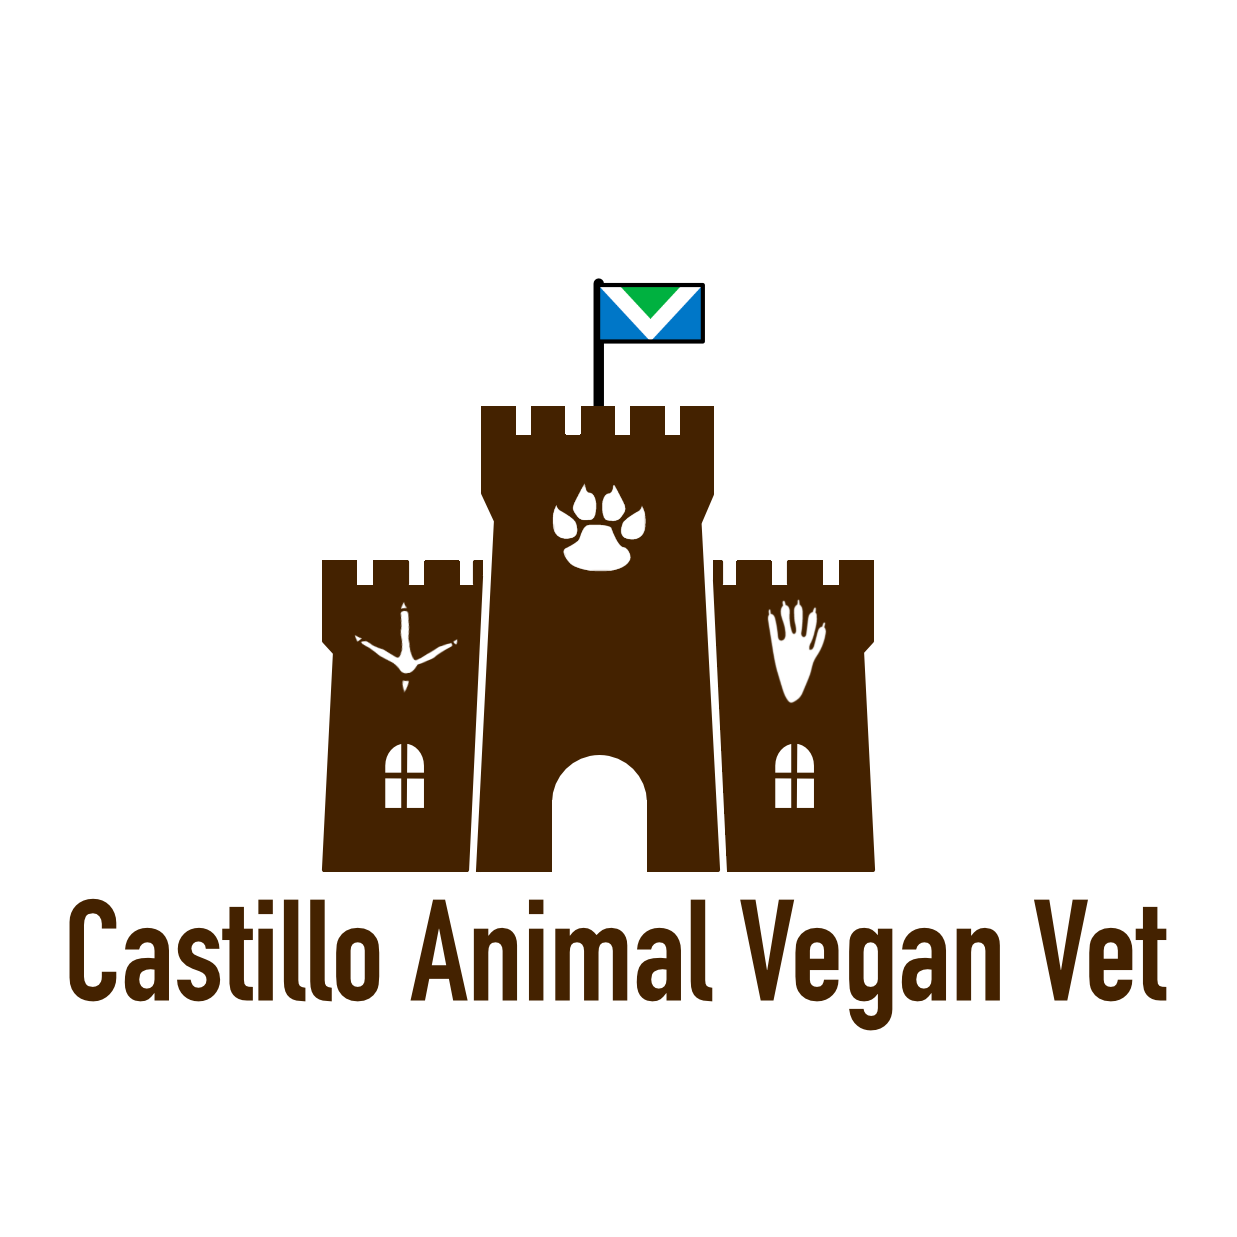 Castillo Animal Veterinary Corporation